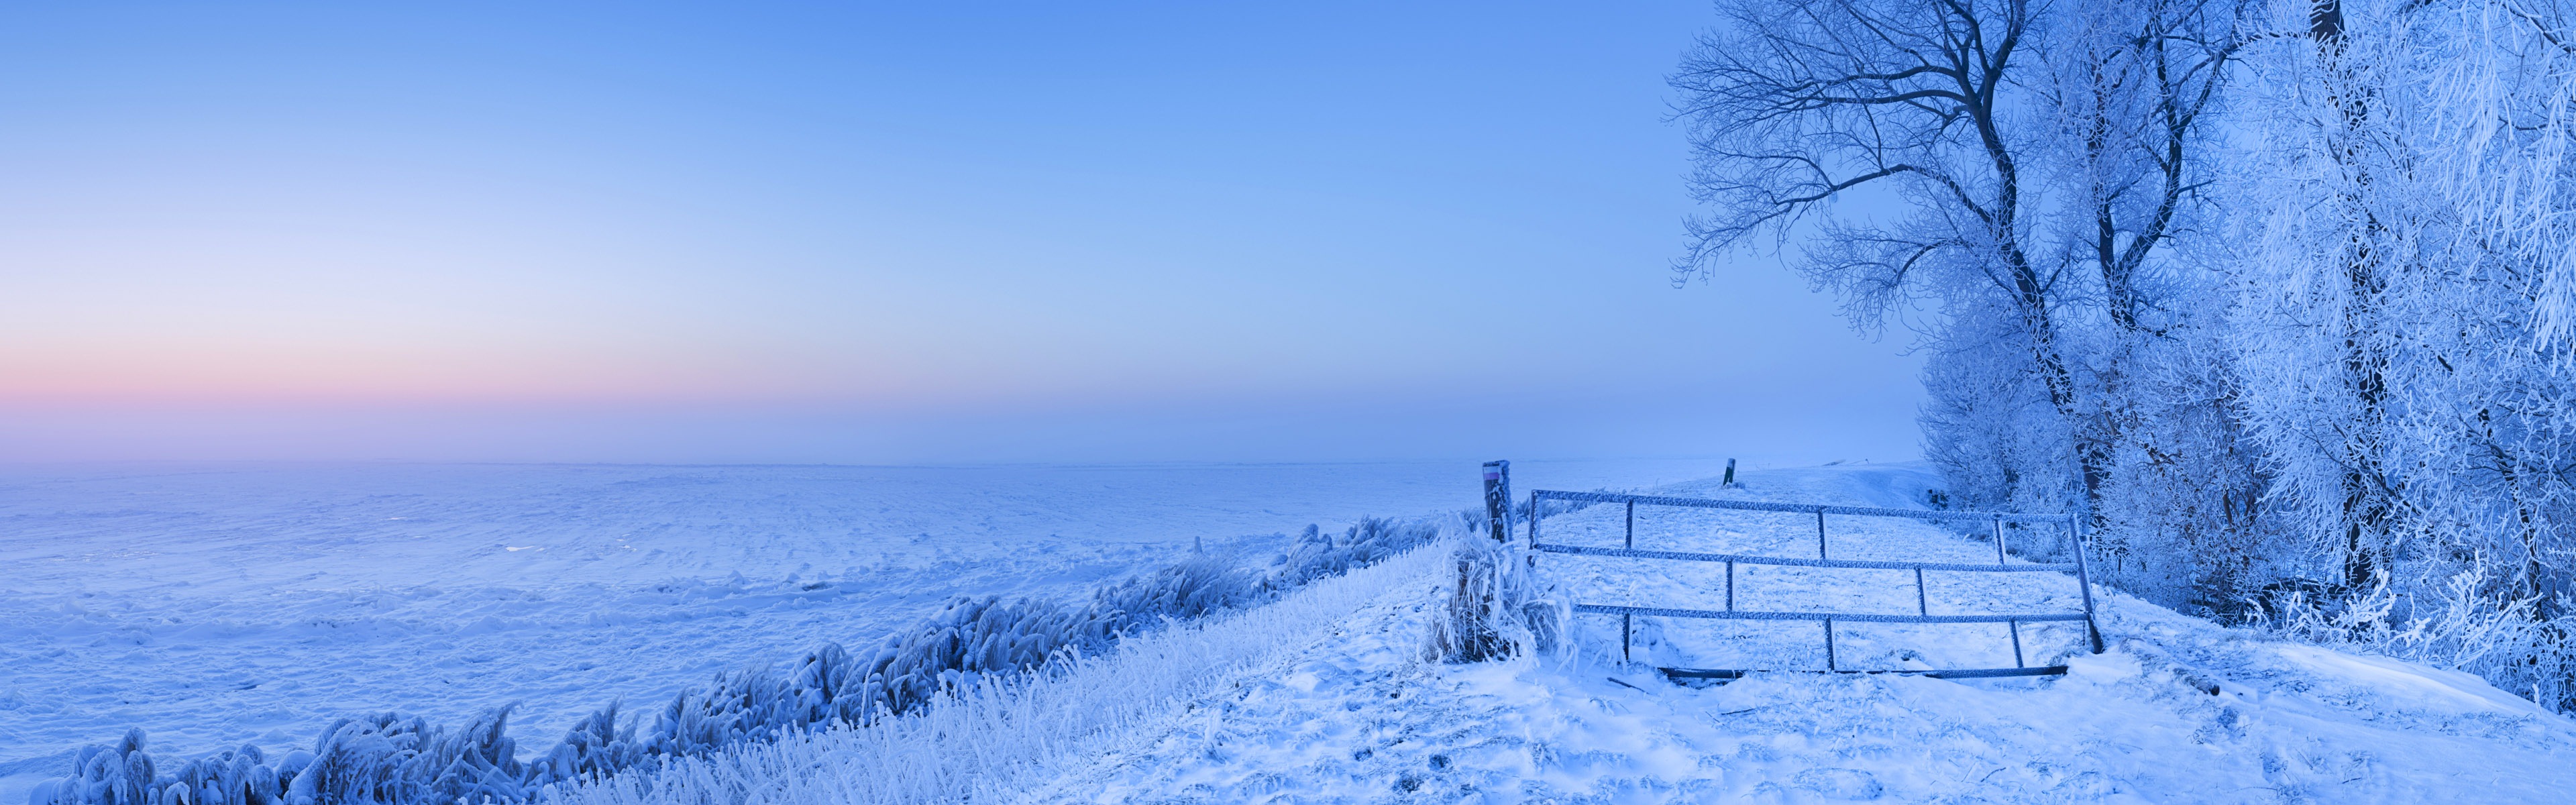 Красивая холодная зима снег, Windows 8 панорамные картинки на рабочий стол #2 - 3840x1200